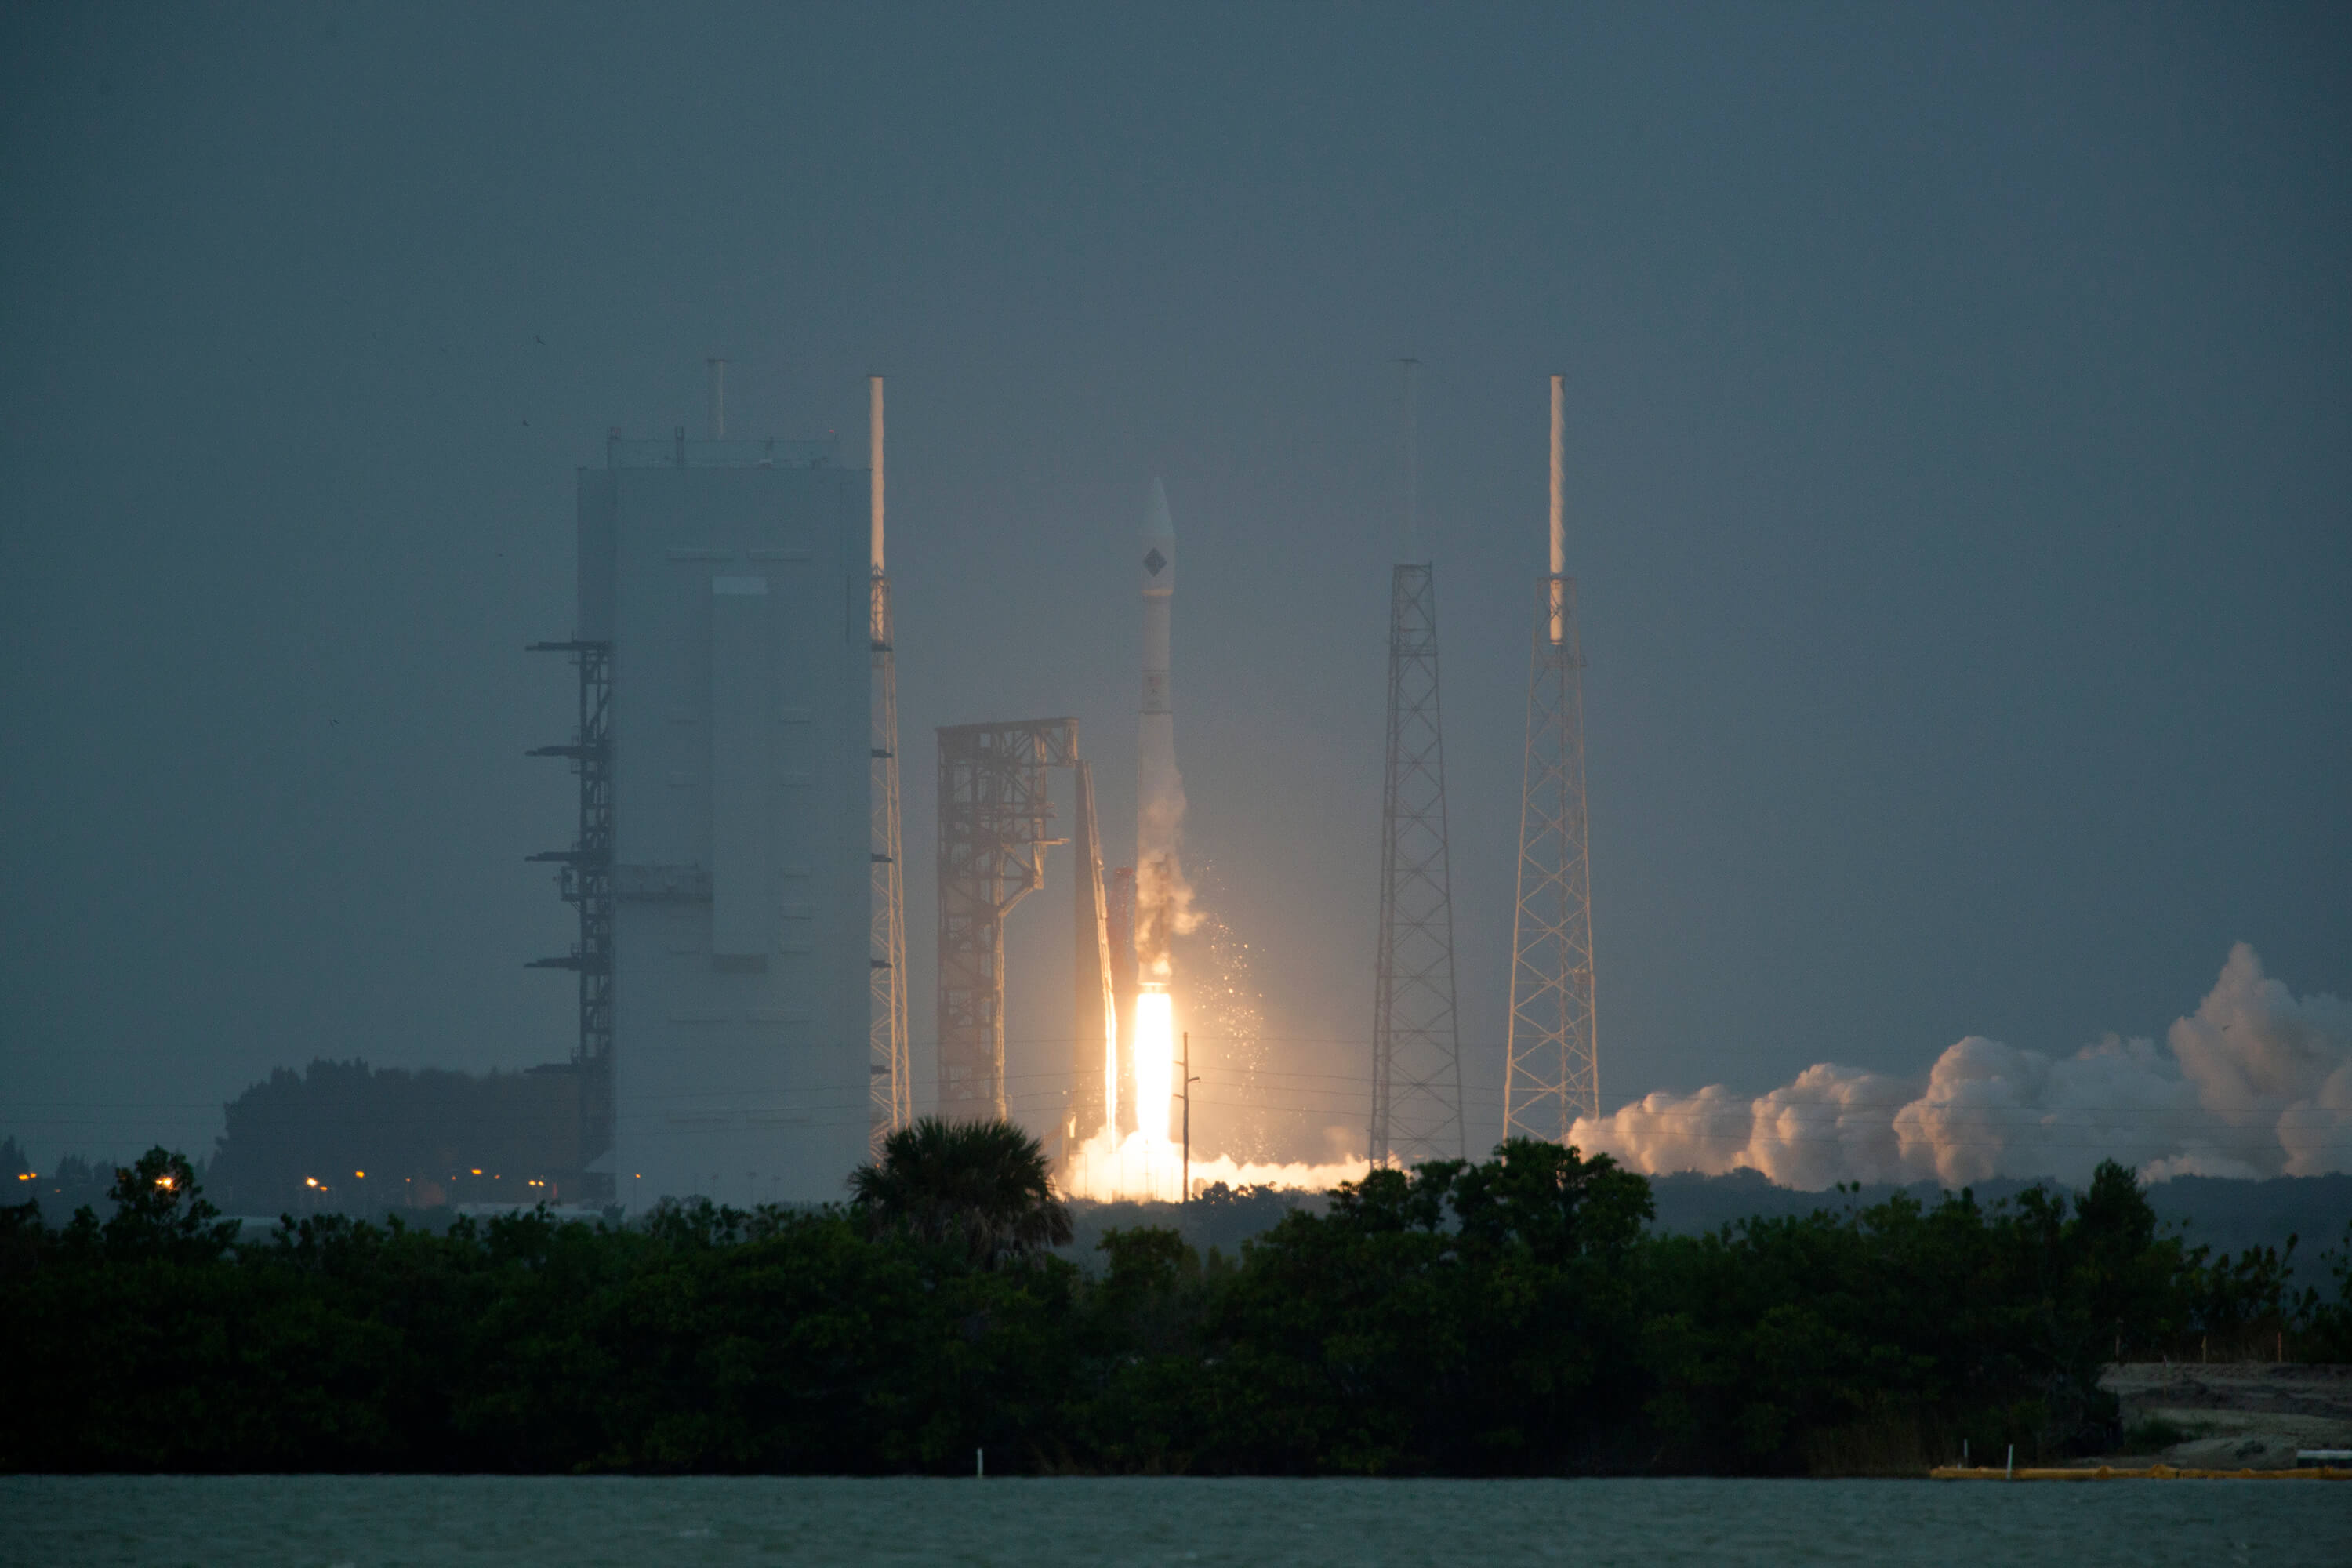 إطلاق مركبة الإمداد الفضائية Cygnus التابعة لشركة Orbital على متن صاروخ ULA Delta V من كيب كانافيرال، 6/12/15. الصورة: ناسا